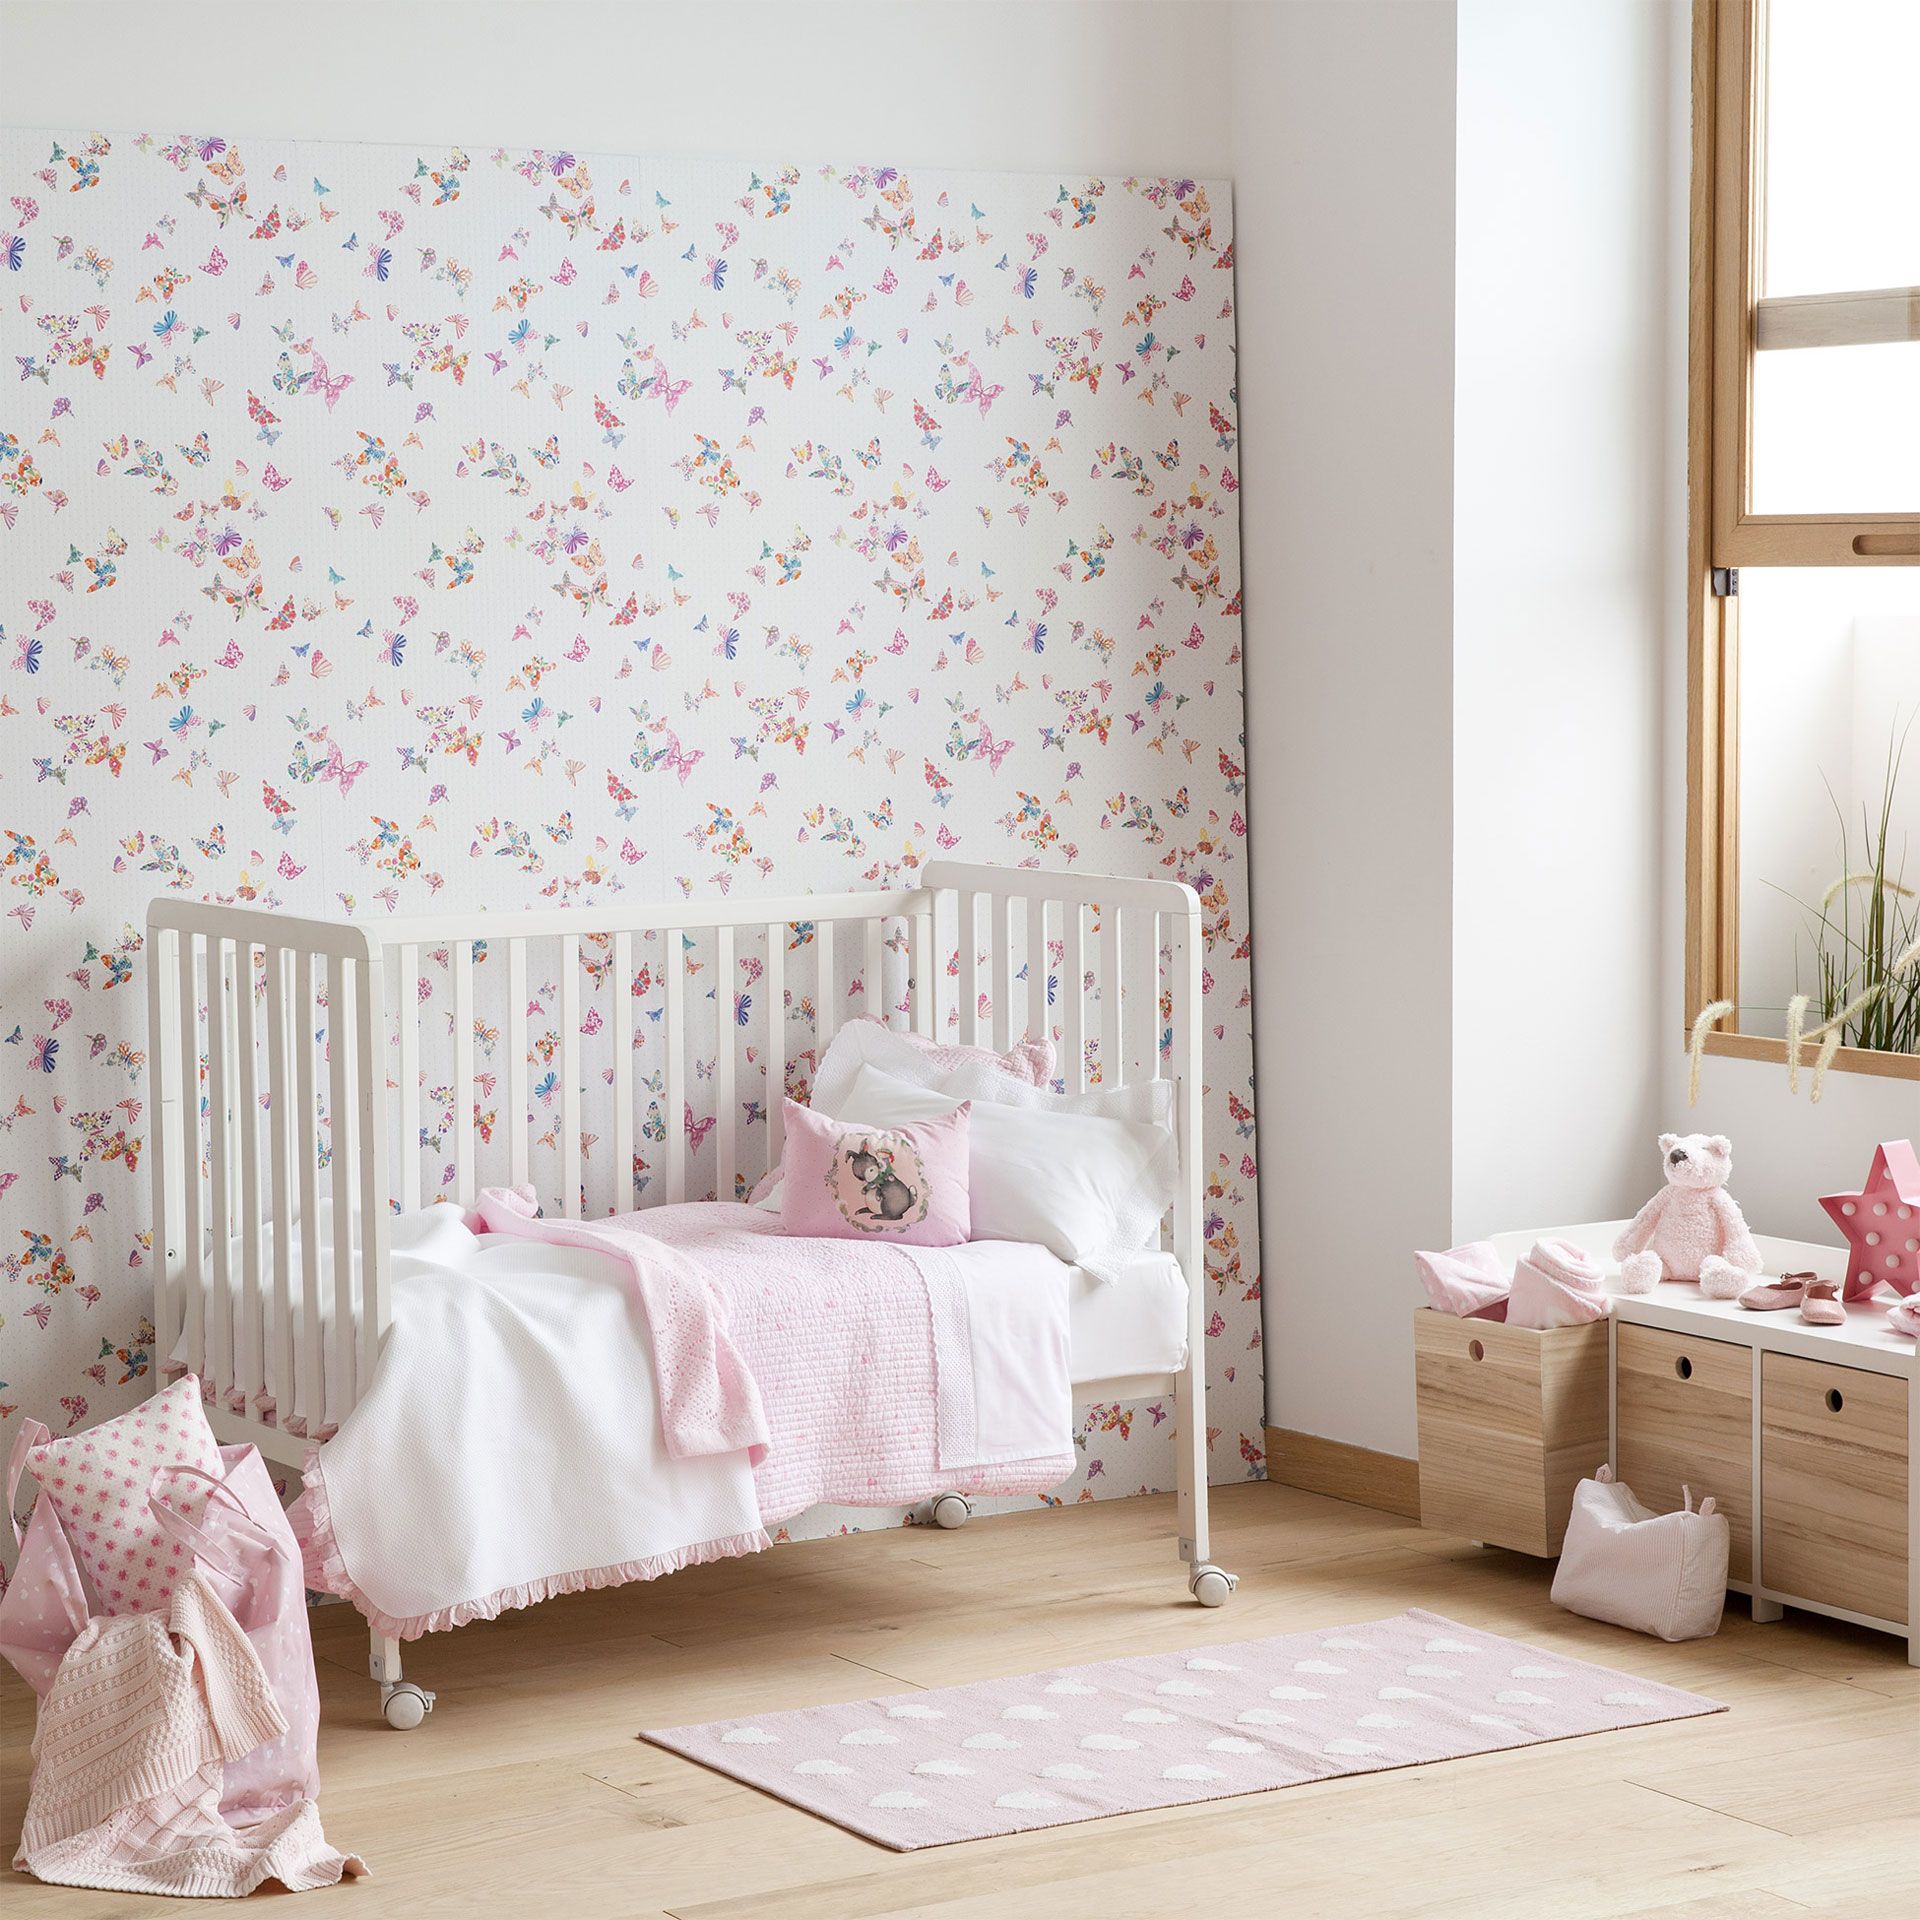 zara home wallpaper,mueble,producto,rosado,habitación,pared